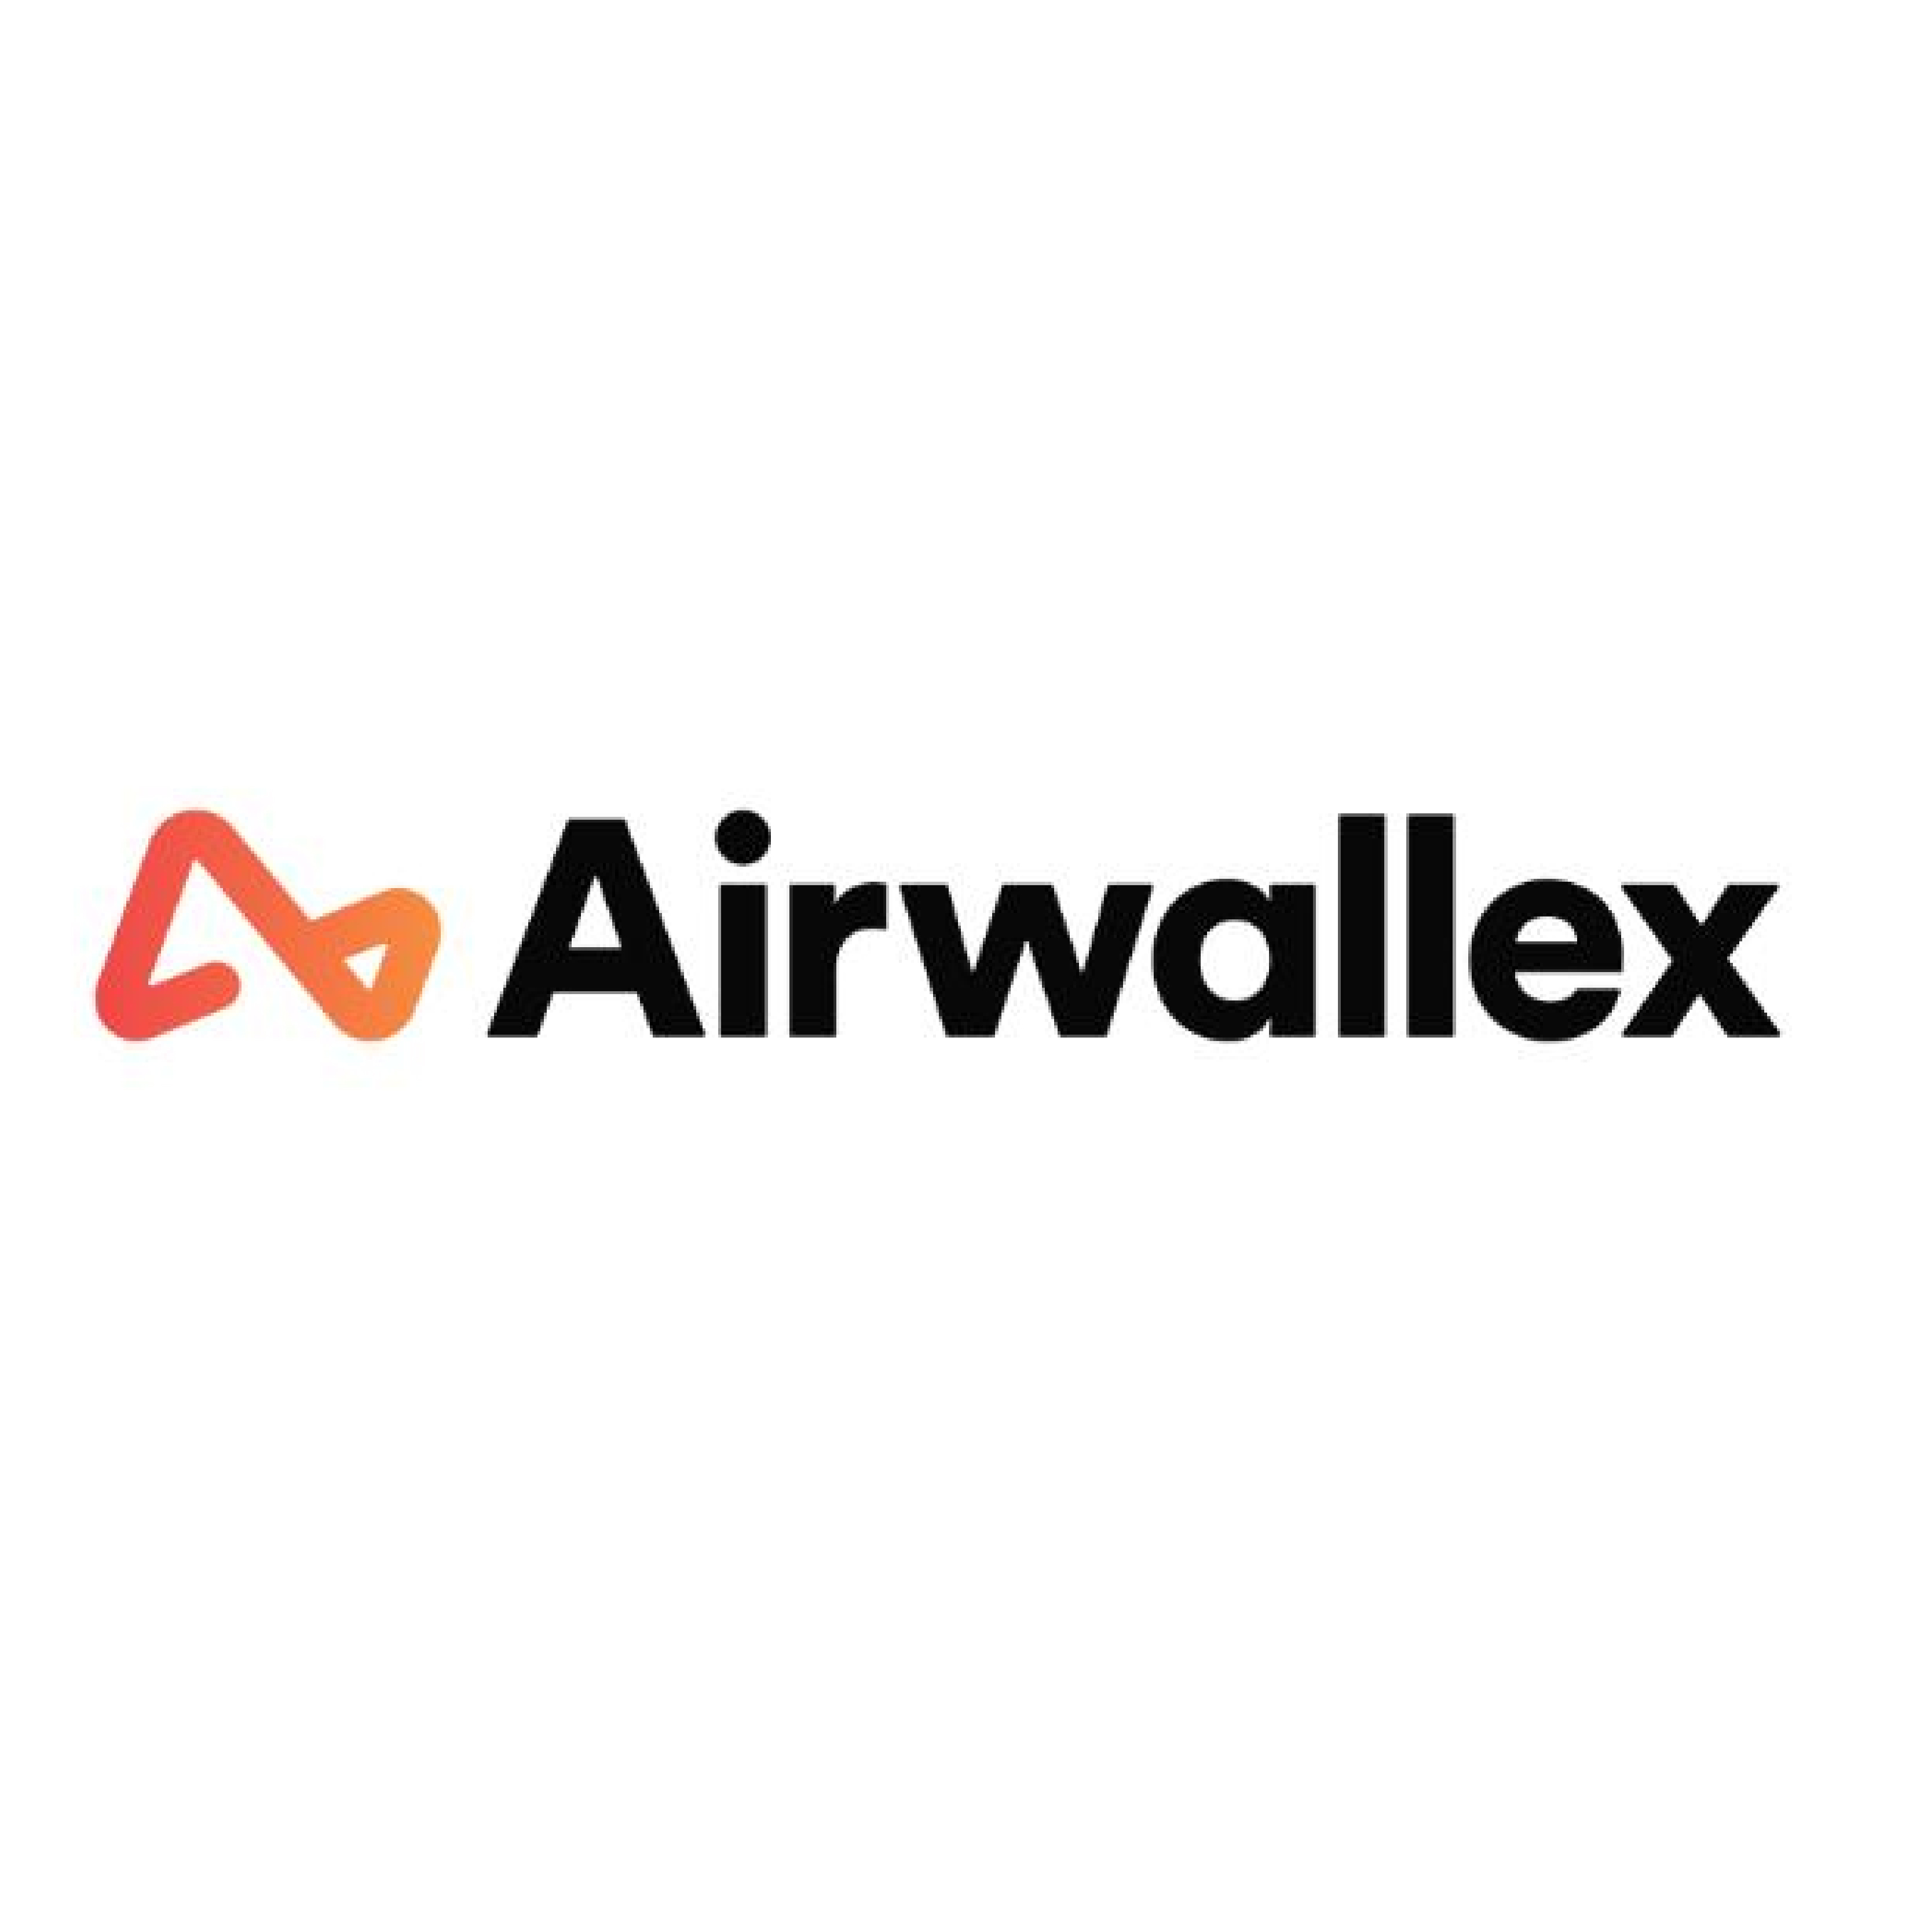 Airwallex空中云汇